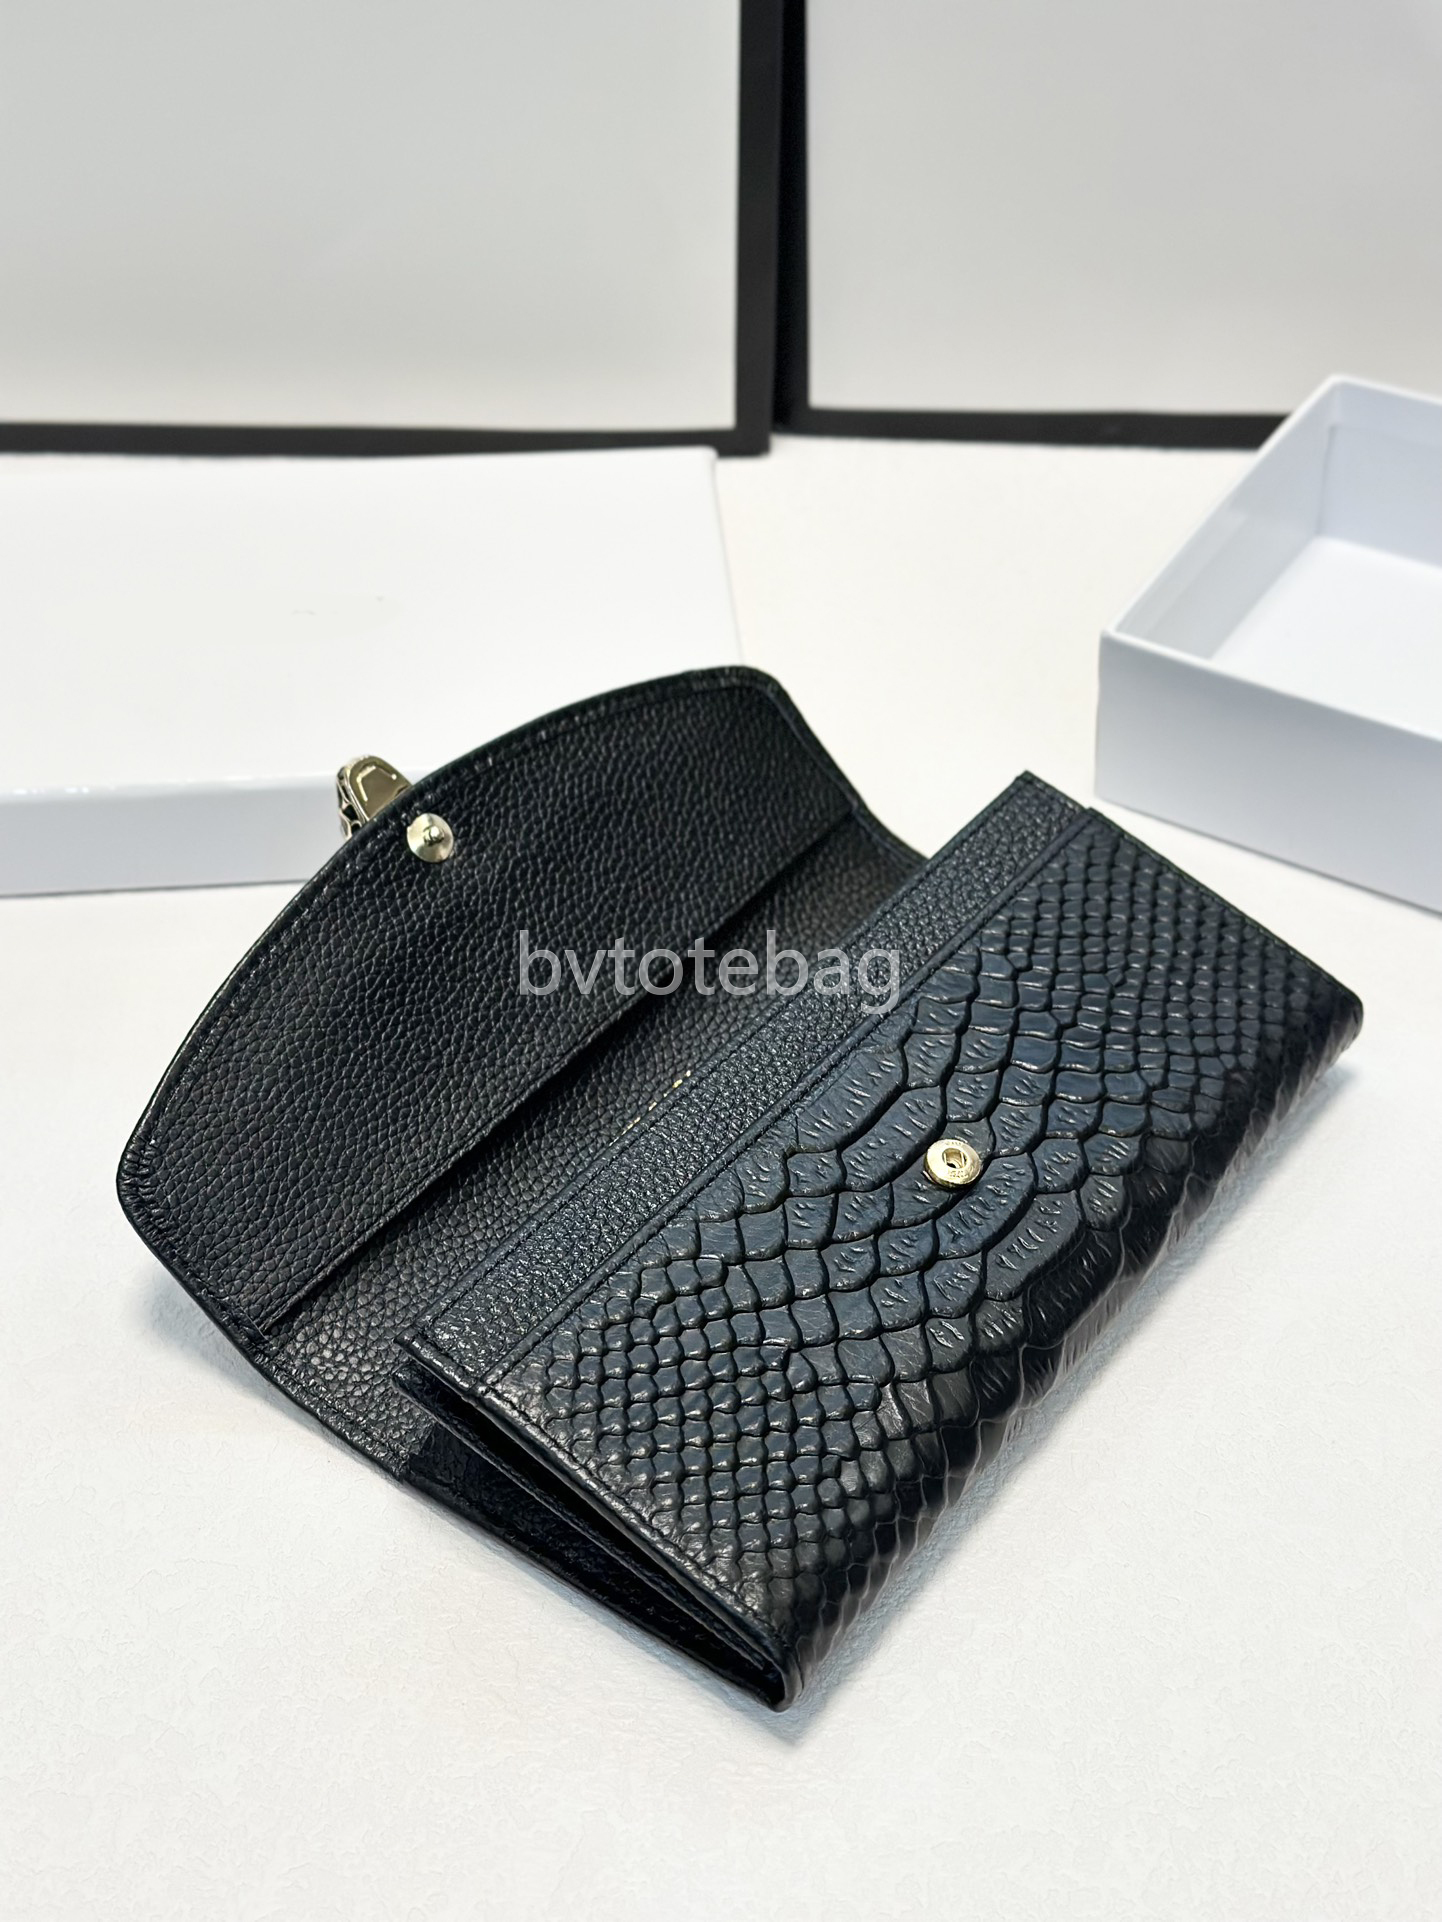 Porte-cartes de luxe sac à main avec boîte serpentine bvlgarrcard titulaire de portefeuille classique sac de passeport de mode pour femmes portefeuille clés portefeuilles en cuir bvs 19 * 10cm